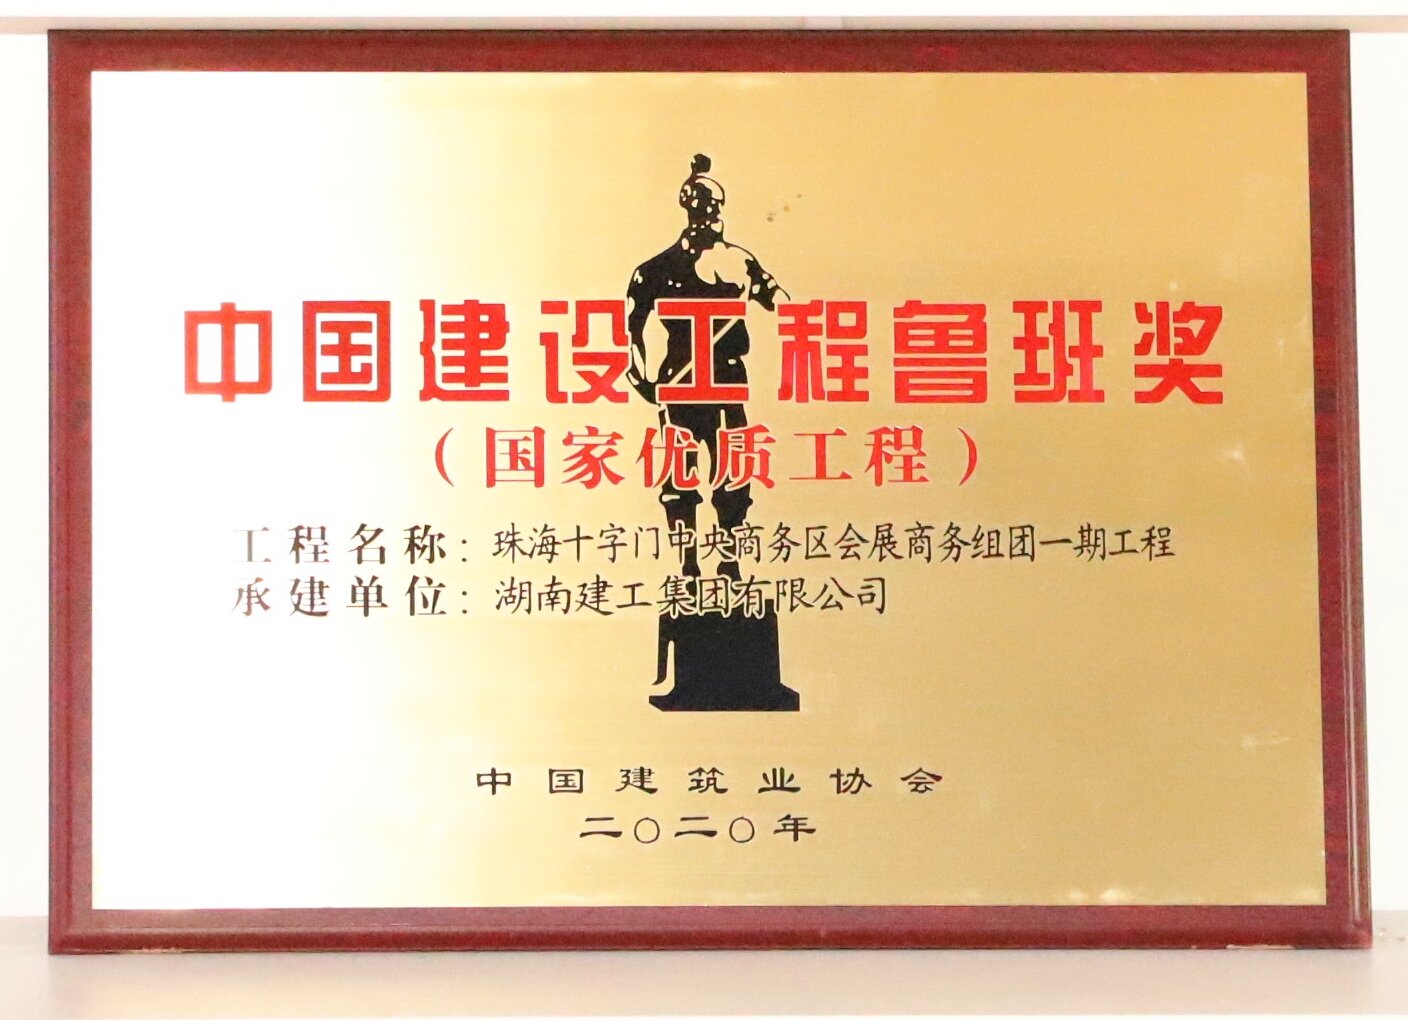 中国建设工程鲁班奖 